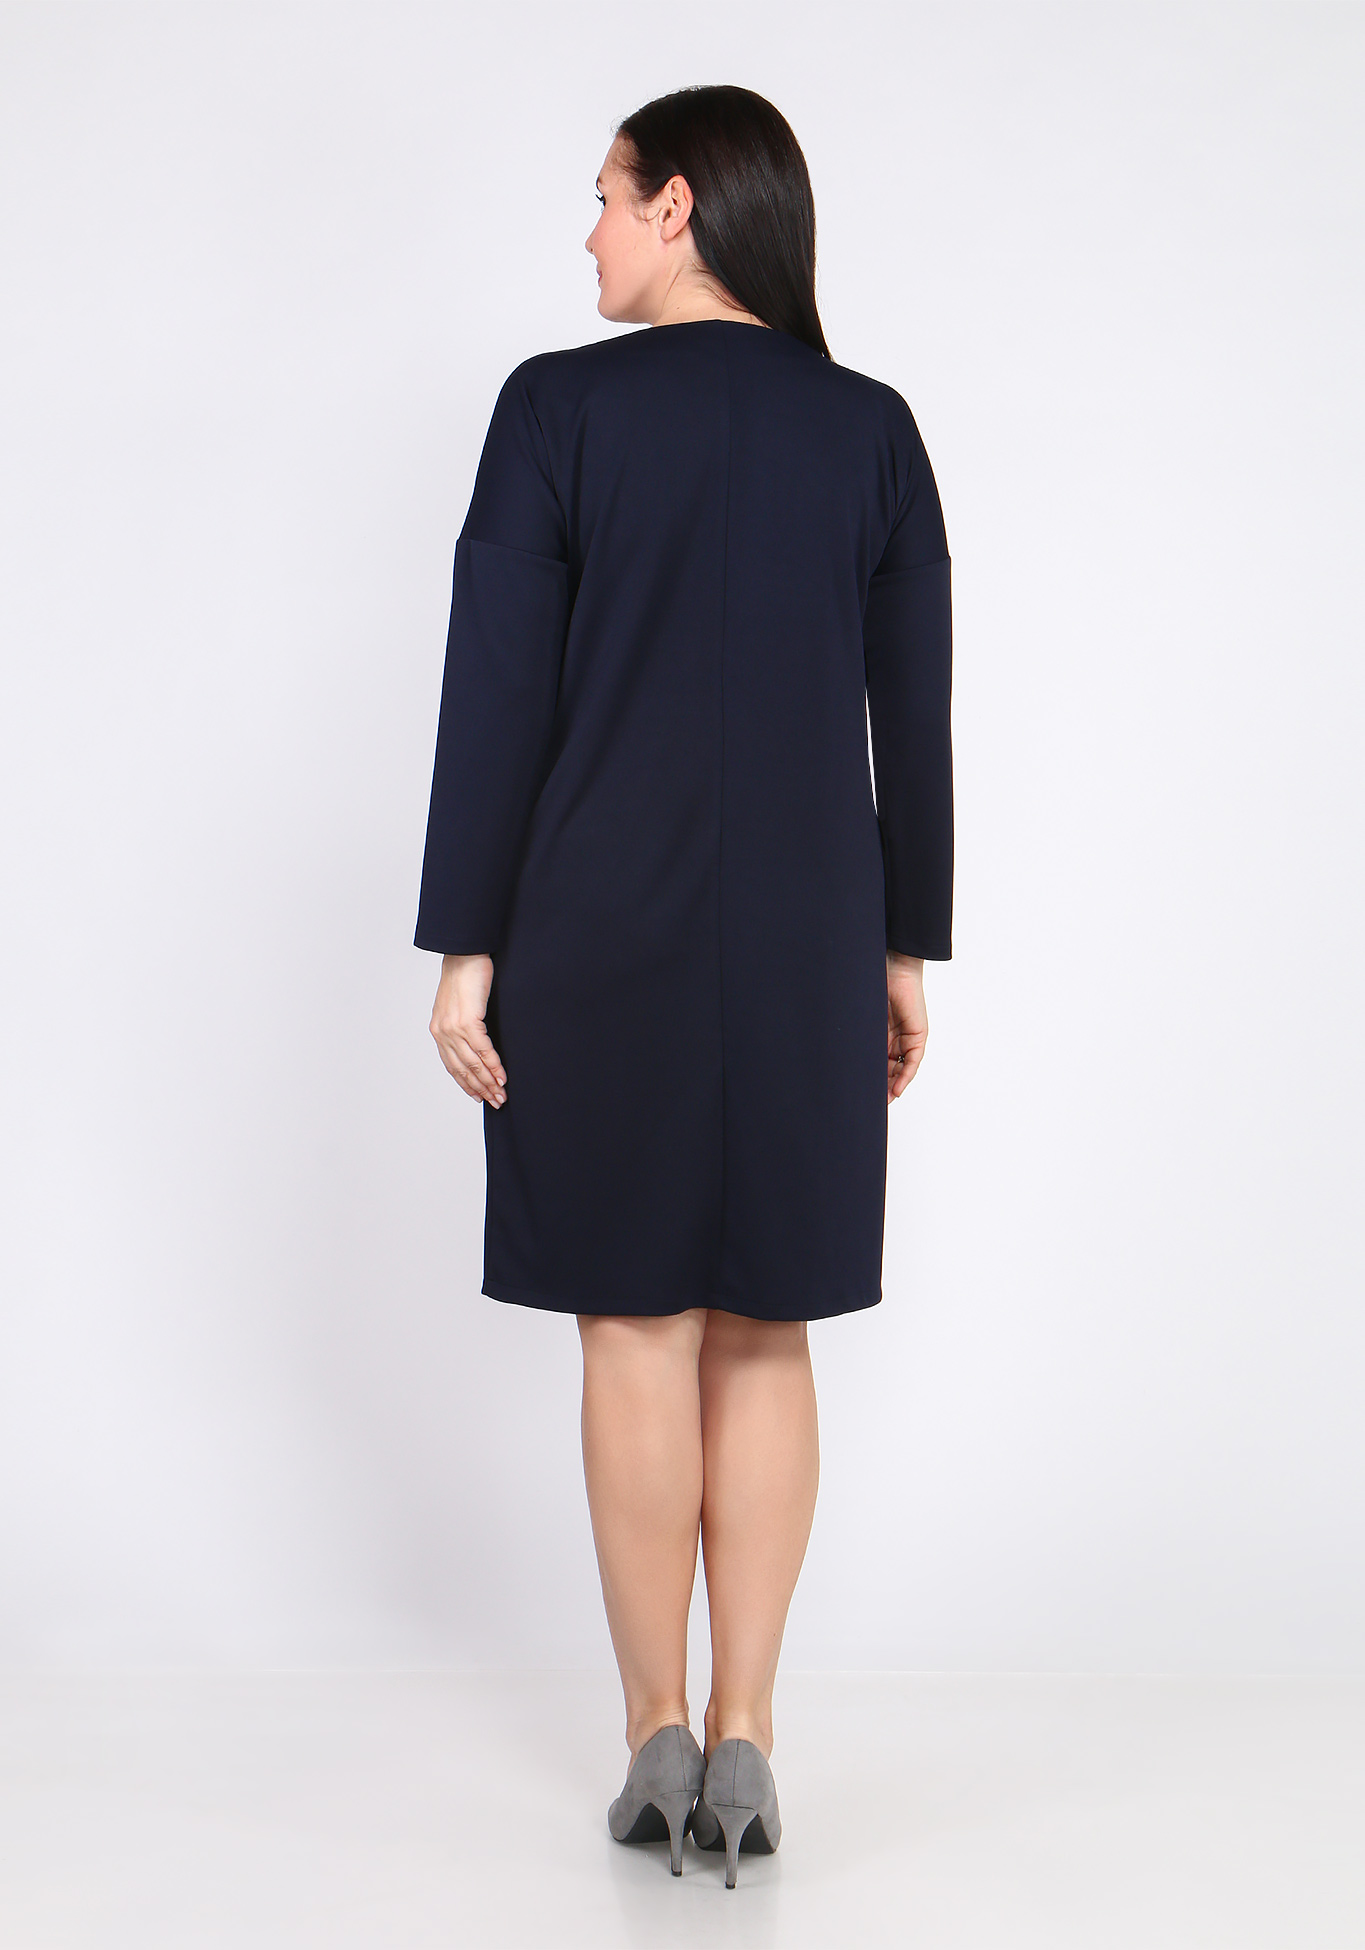 Платье с лампасом Bianka Modeno, размер 48, цвет чёрный - фото 9